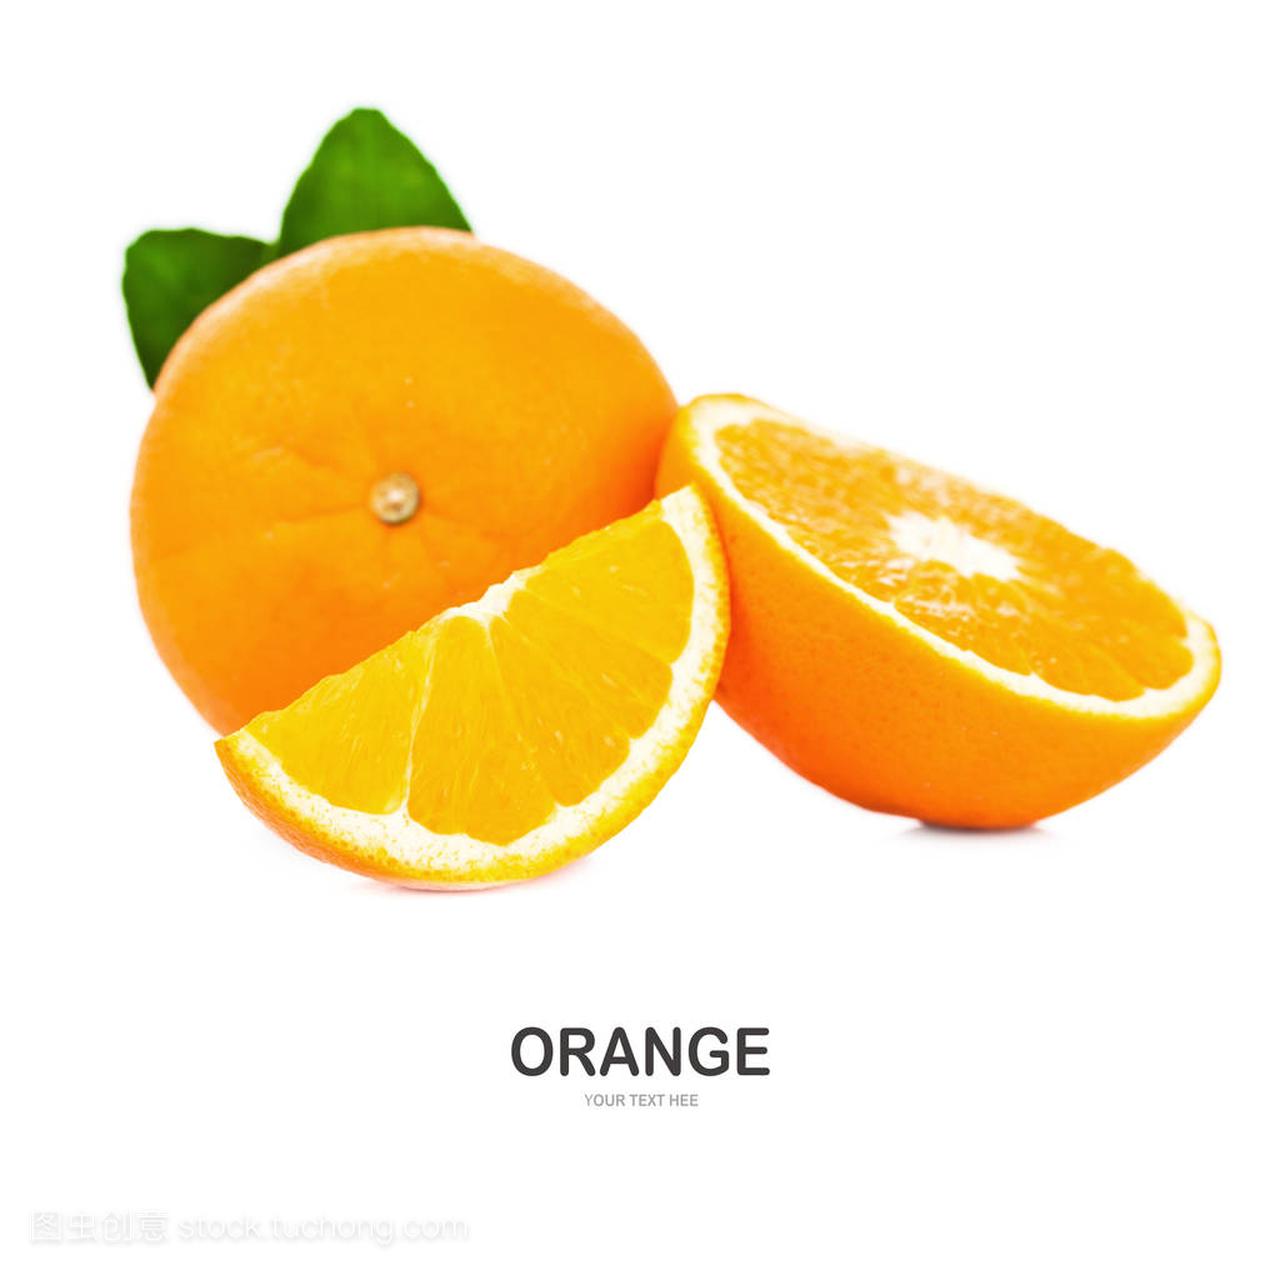 Orange fruit with orange leaves isolate on white